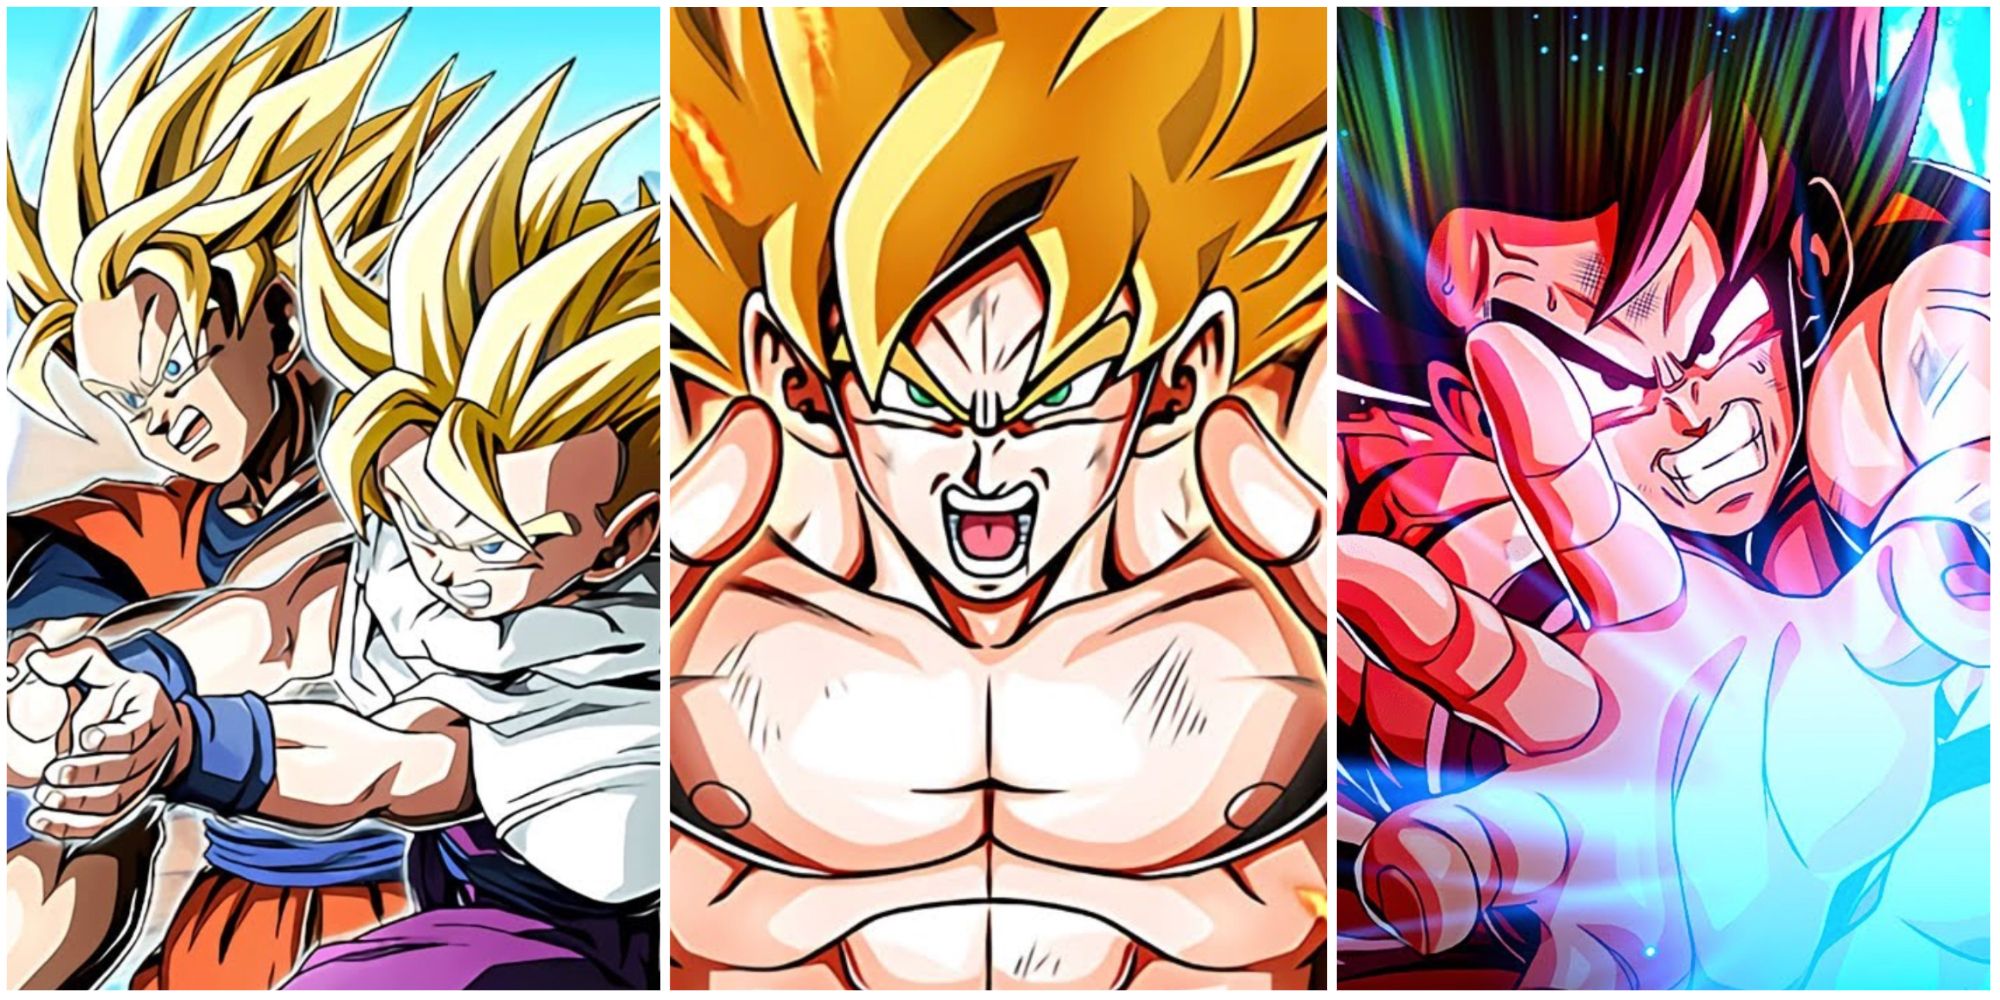 DBZ Dokkan Best Super Units: SSJ Gohan and Goku, SSJ Goku, Kaioken Goku